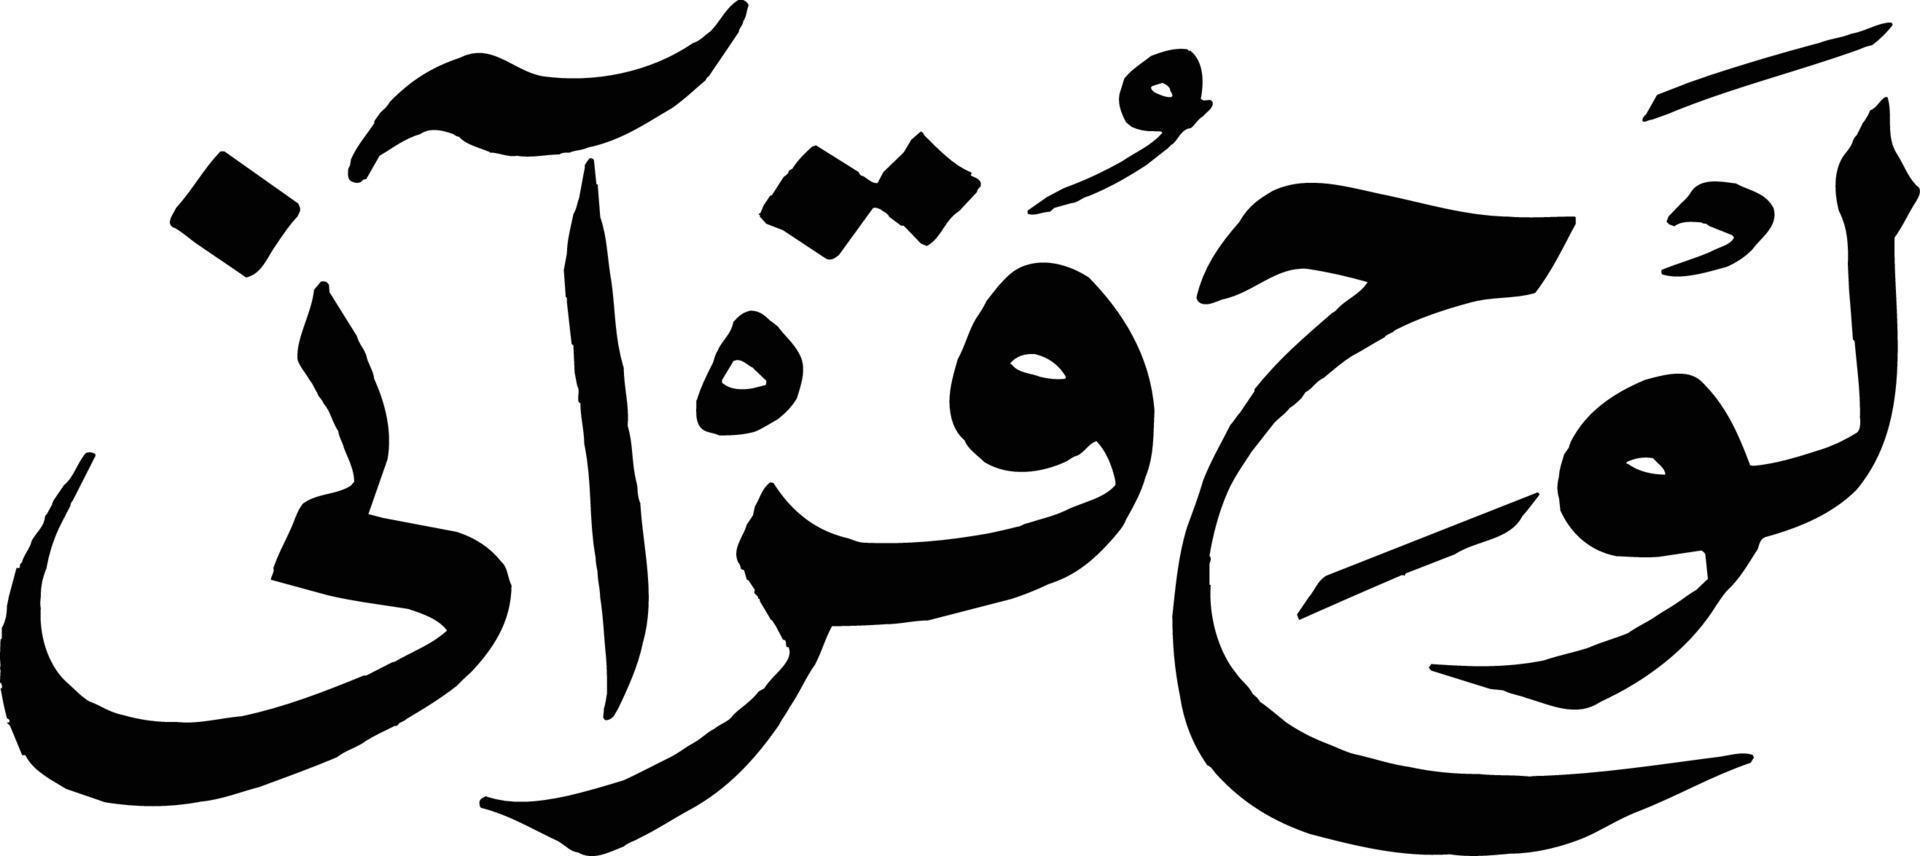 lohe qurani título caligrafía islámica vector libre